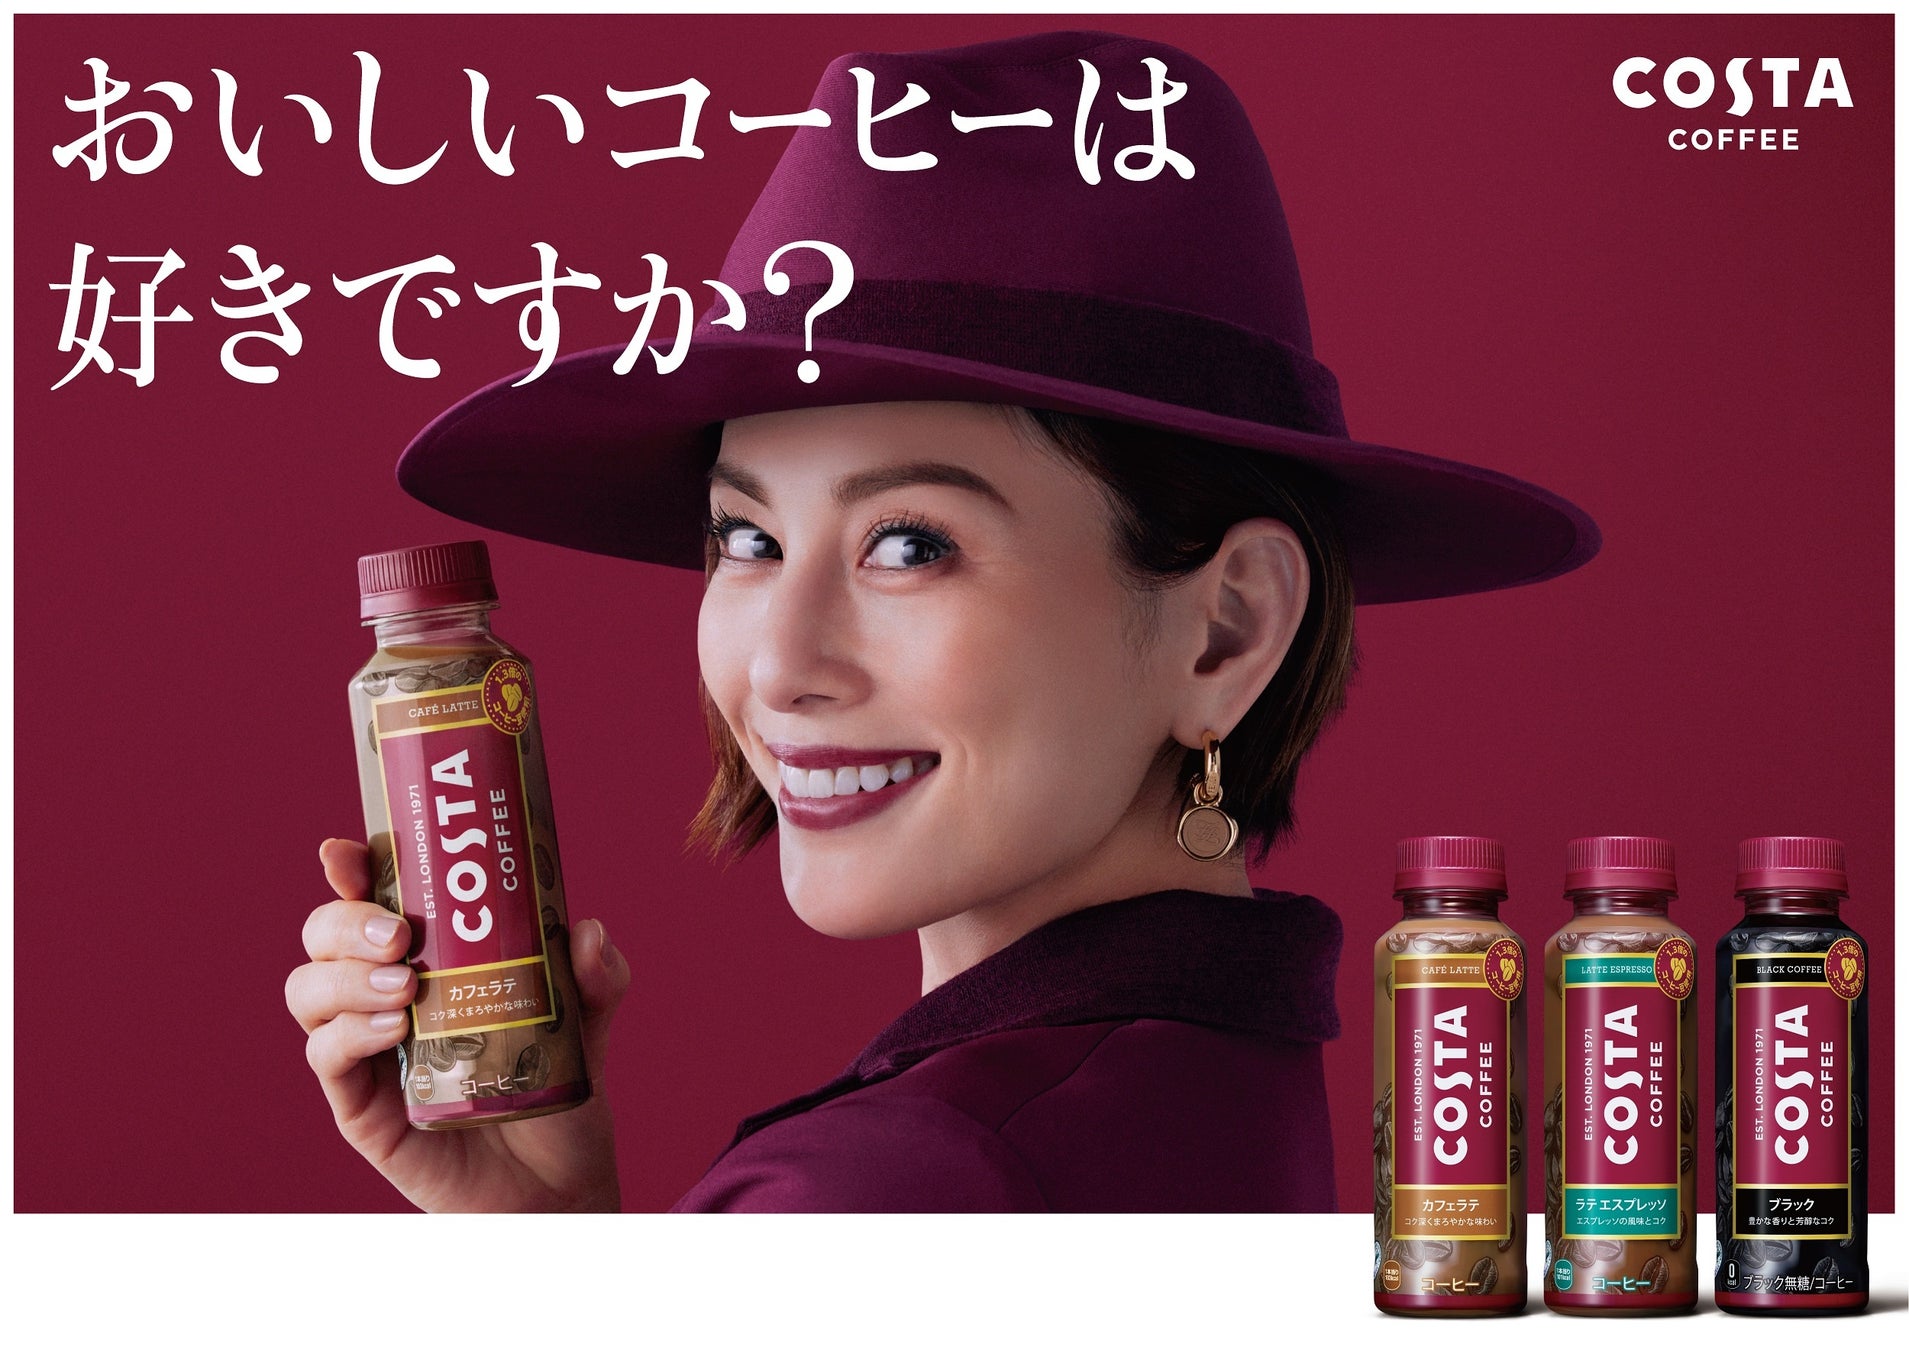 上質なひとときを過ごす米倉涼子さんの表情が印象的な「コスタコーヒー」新CM・キャンペーン3月21日（月）開始！